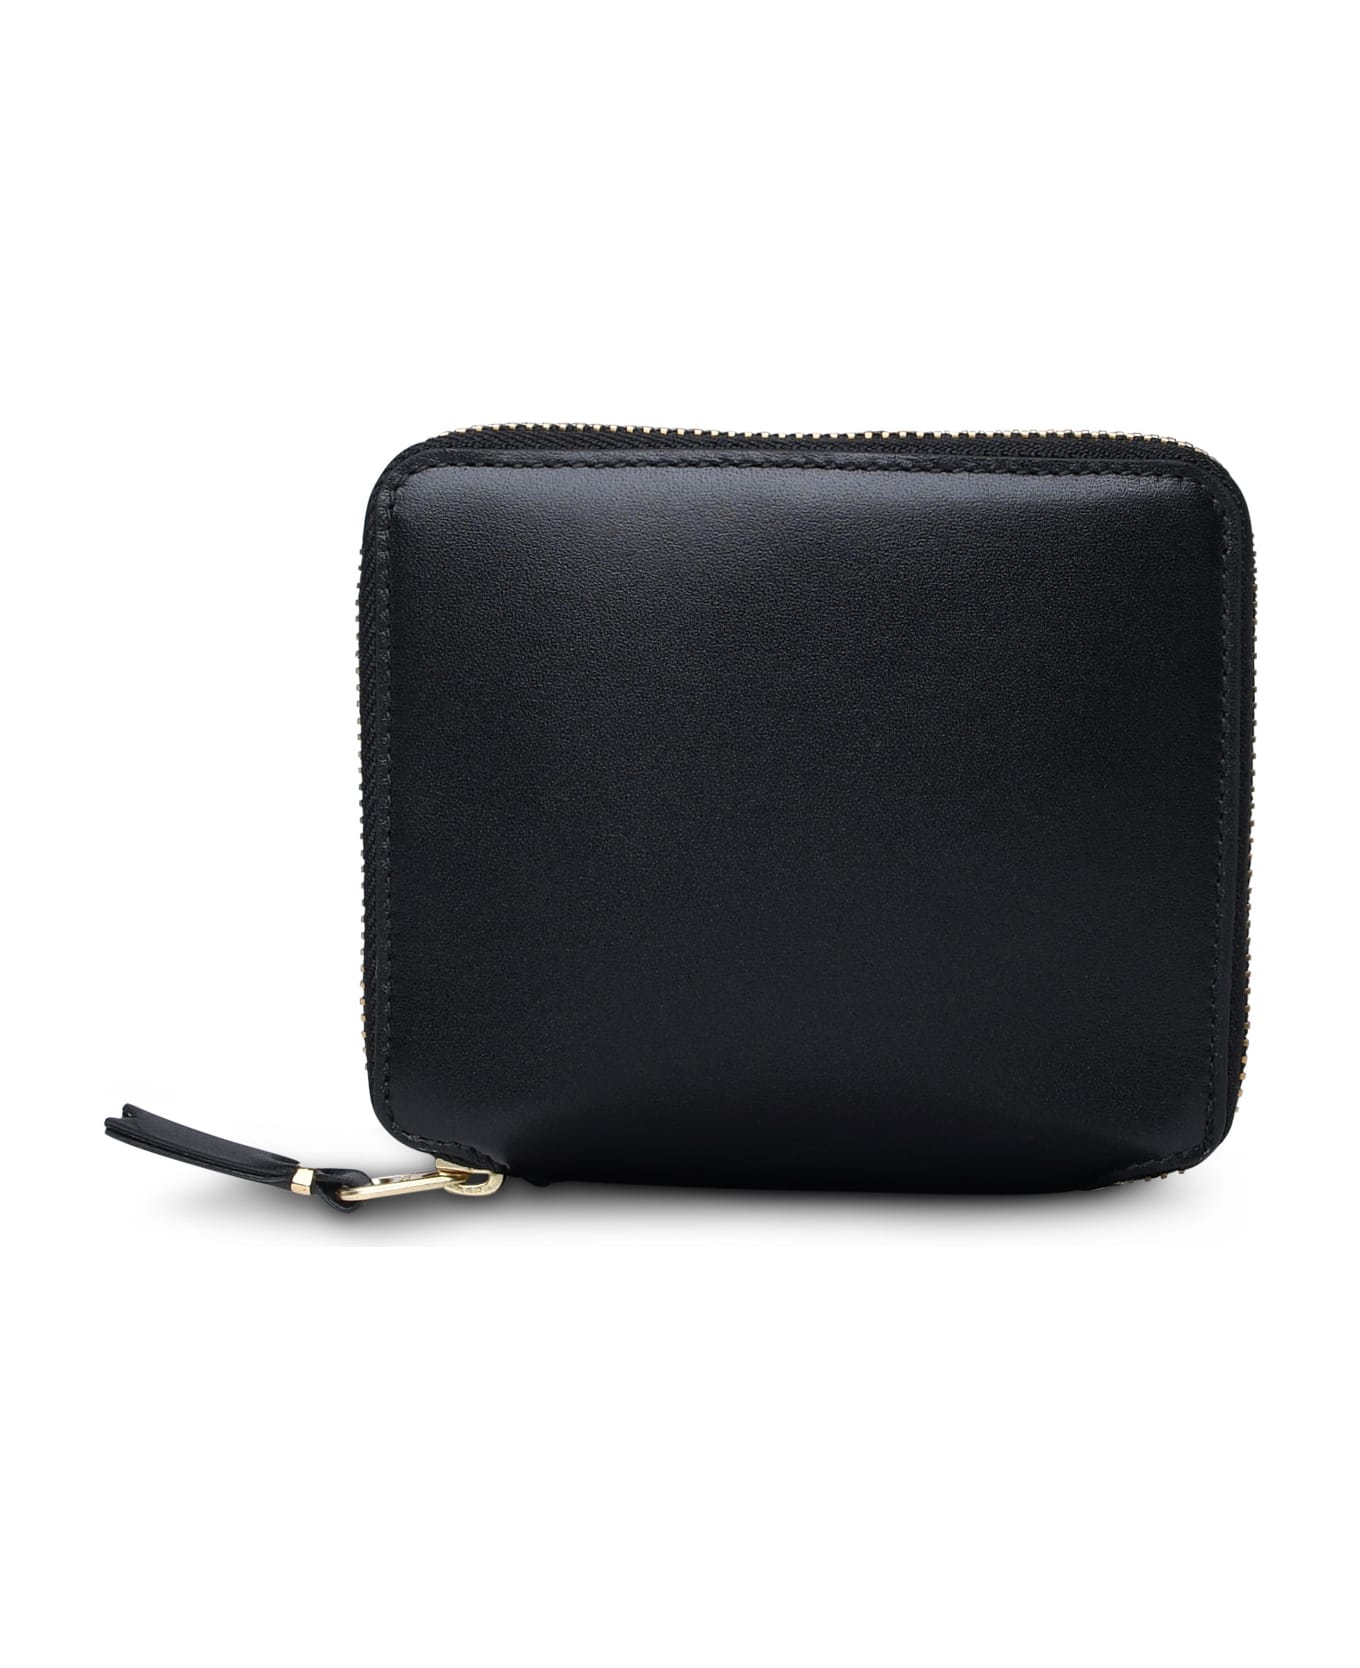 Comme des Garçons Wallet Black Leather Wallet - Black 財布